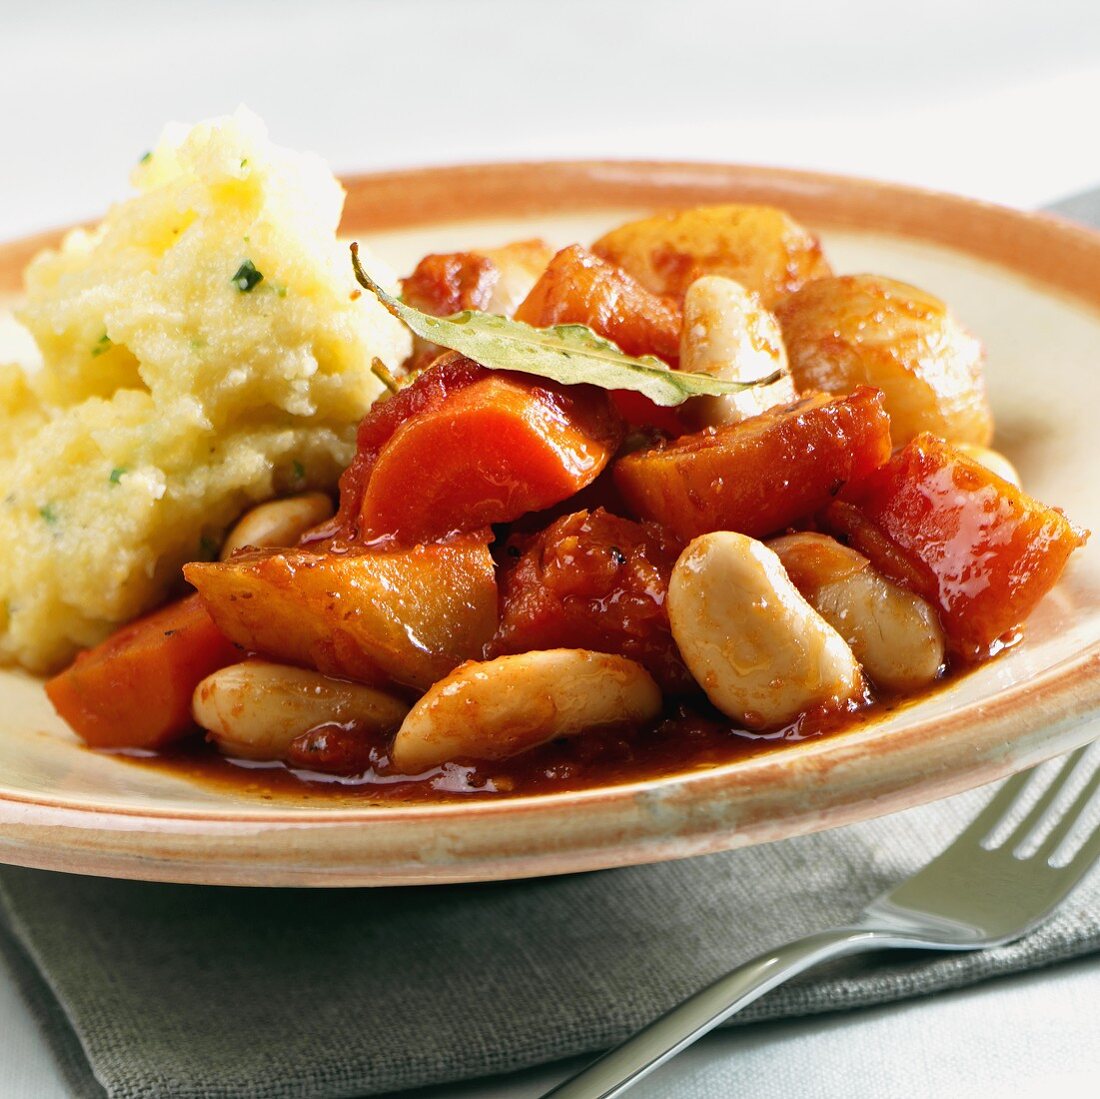 Bean stew with polenta